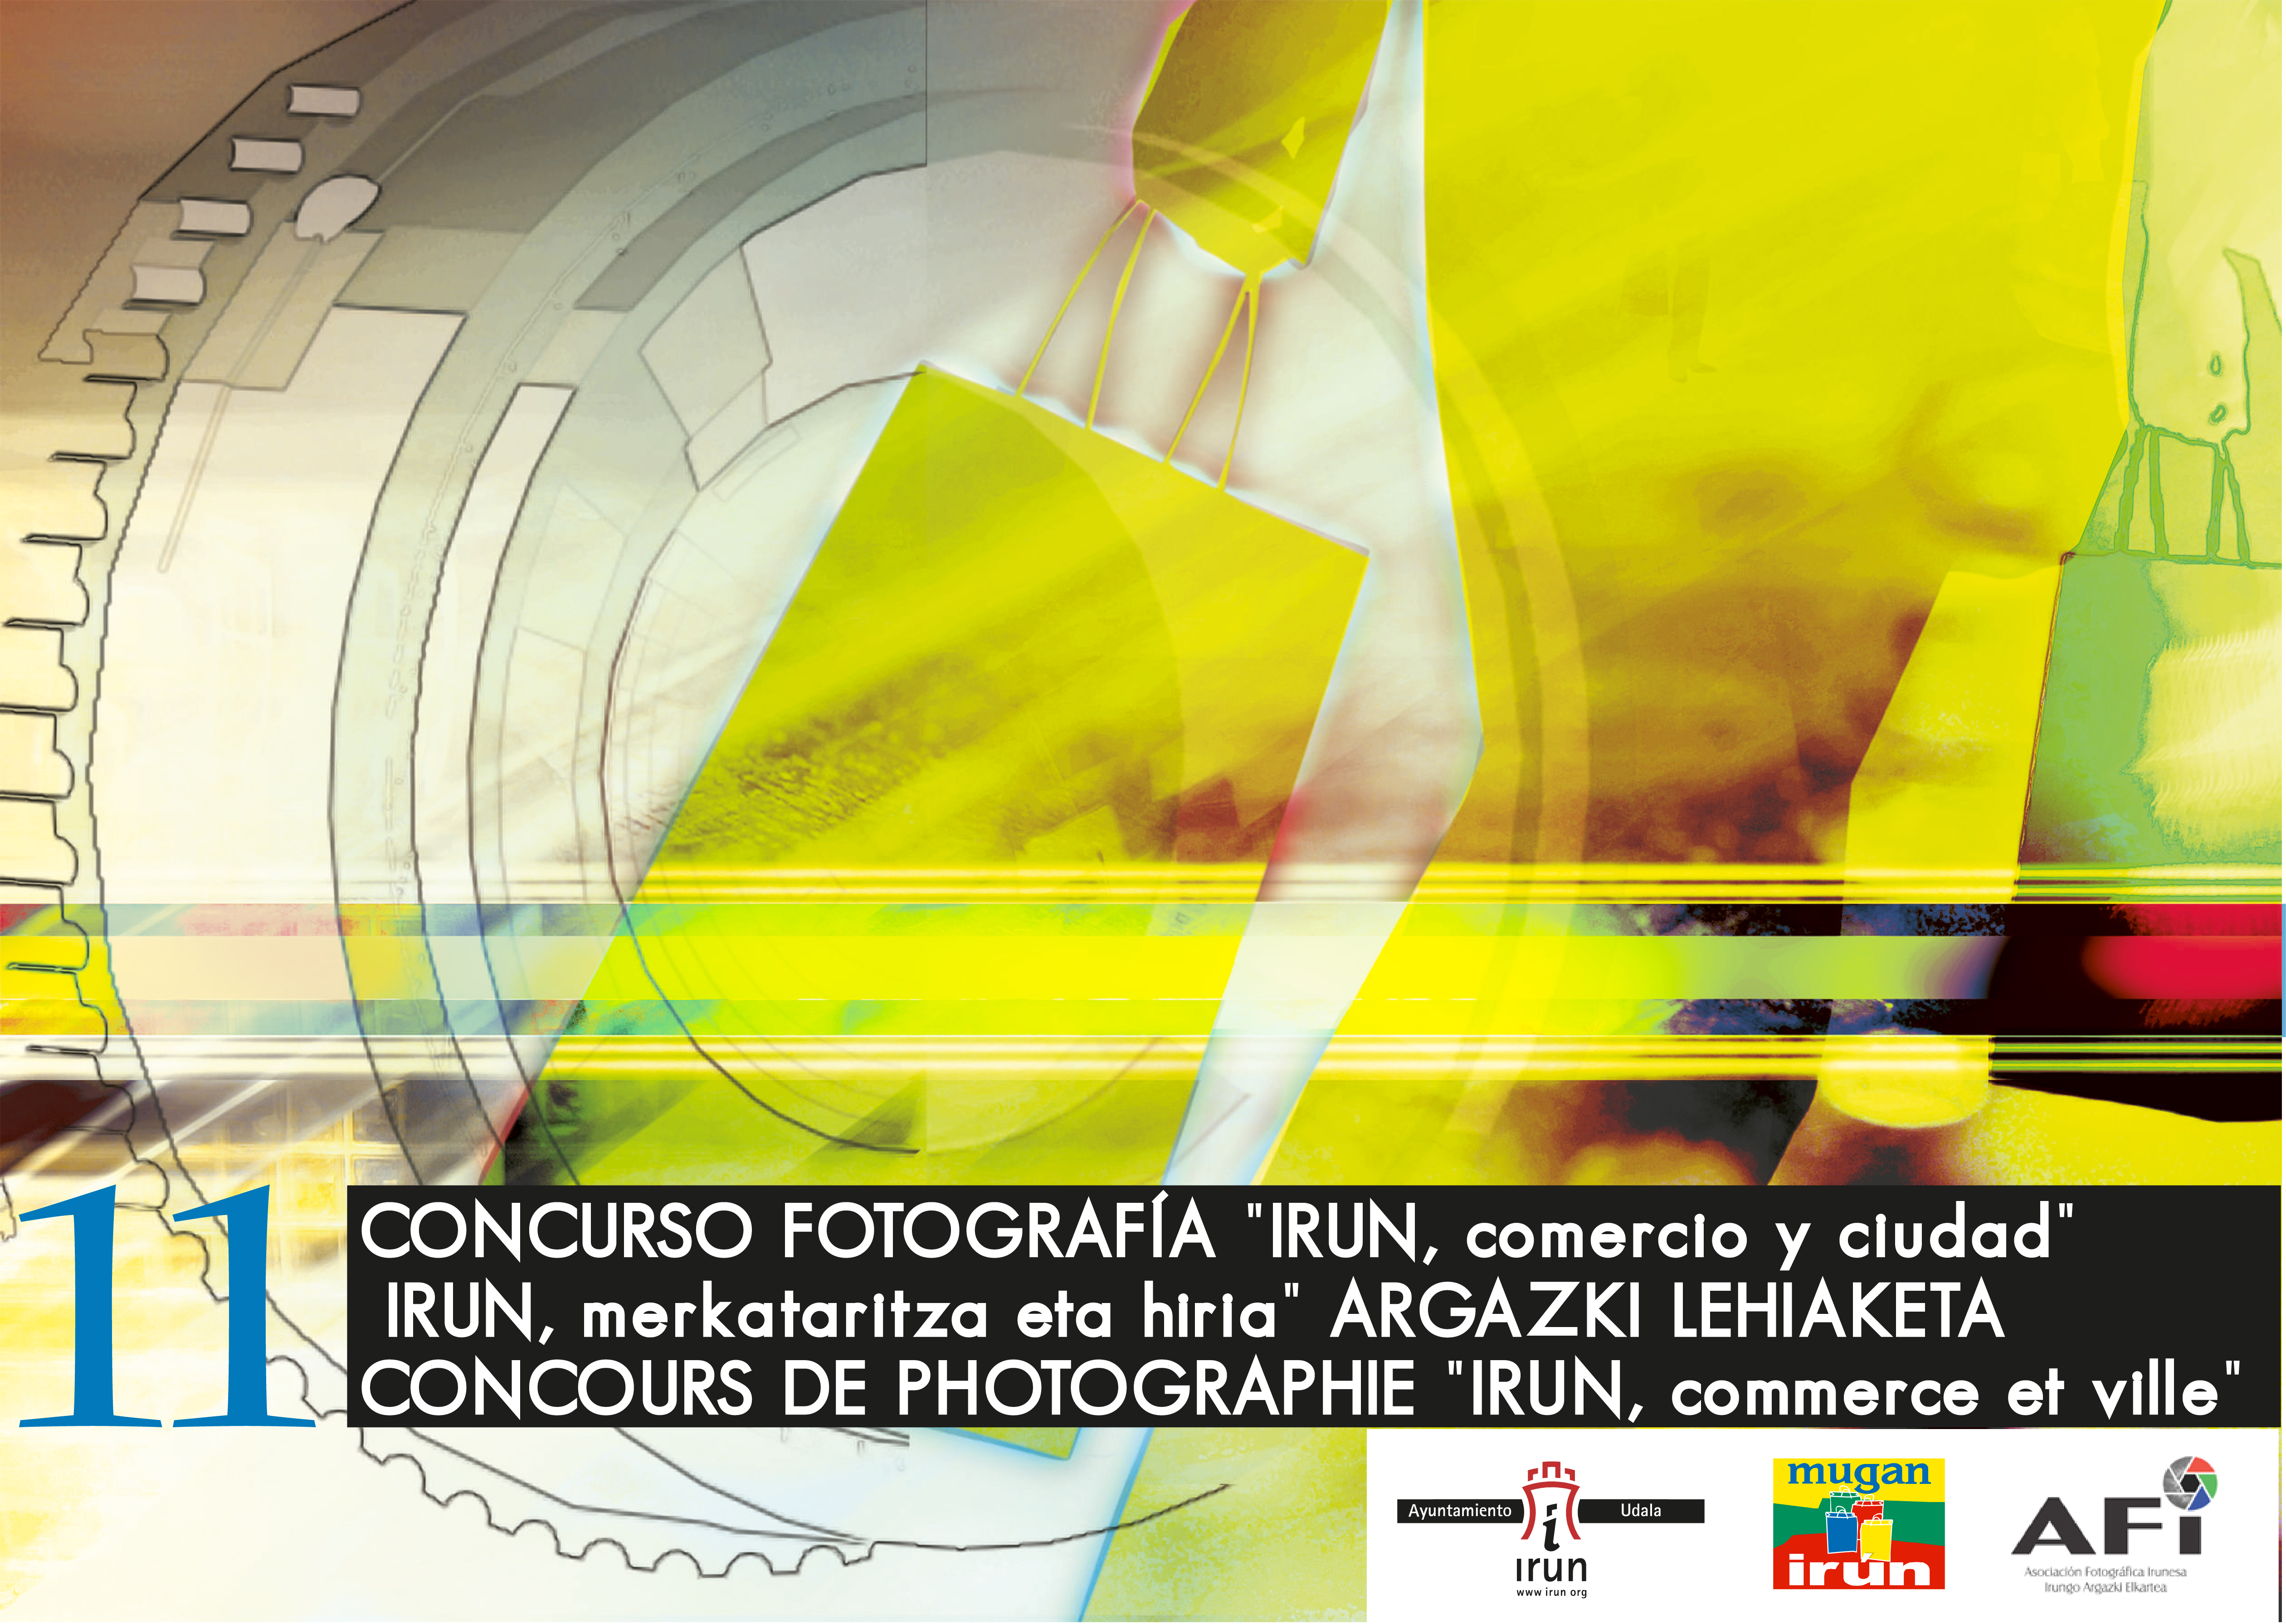 Concurso Fotografía "Irun, comercio y ciudad"